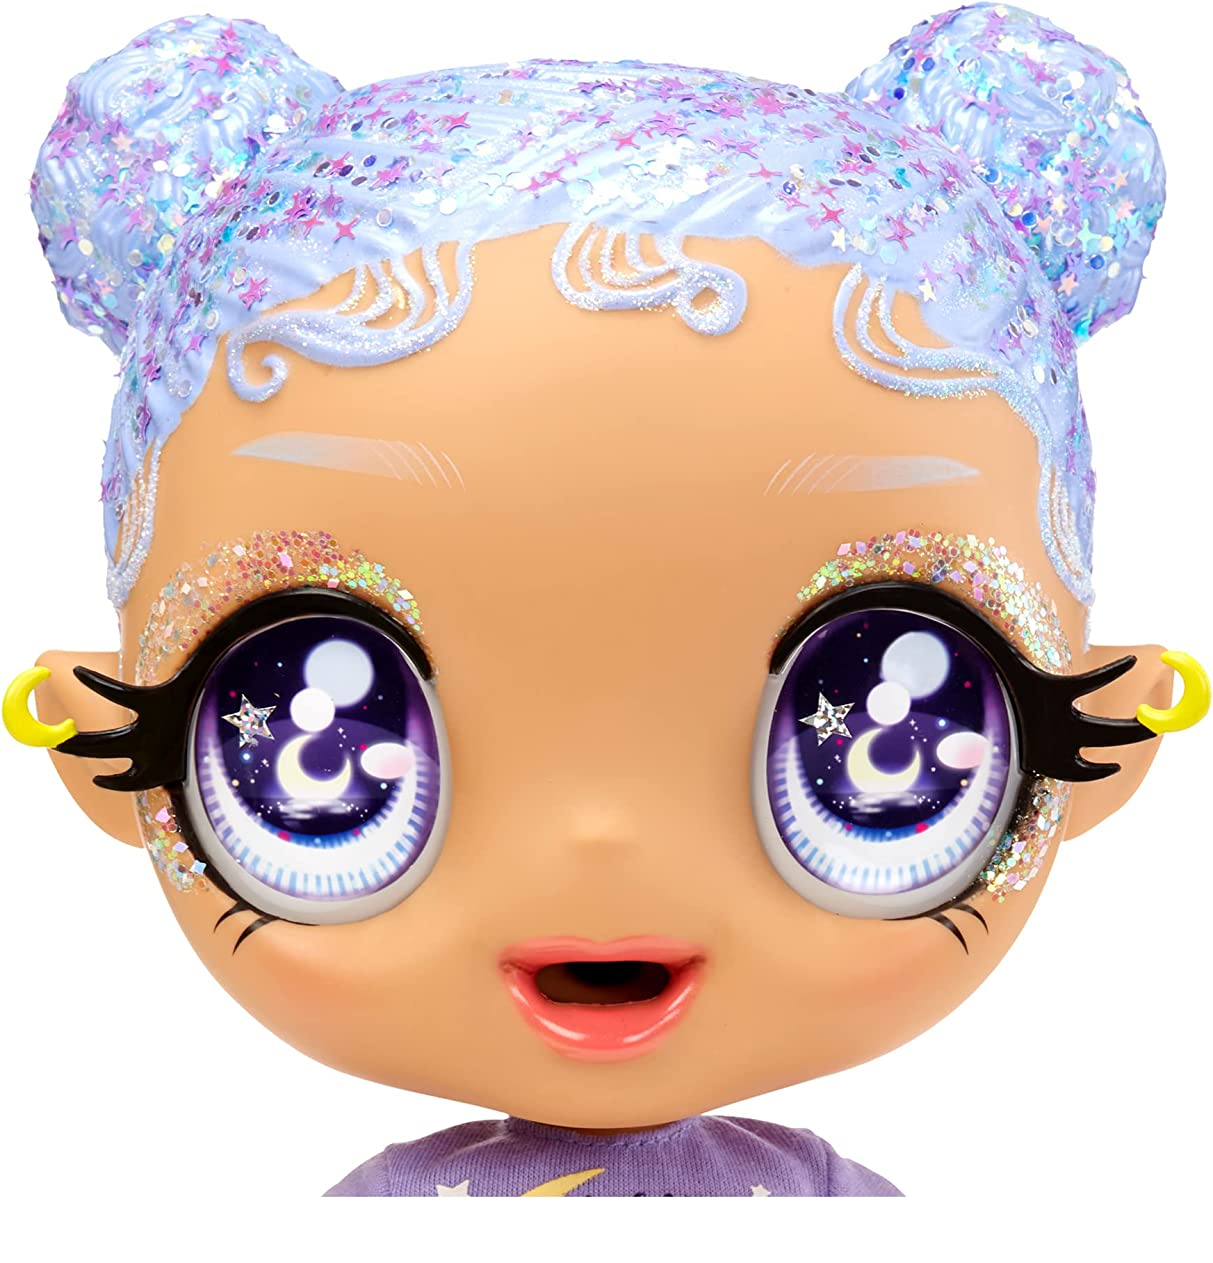 Mga's glitter babyz - selena stargazer - bambola con 3 cambi di colore, capelli viola glitterati, vestito con luna e stelle, accessori, biberon e ciuccio - GLITTER BABYZ